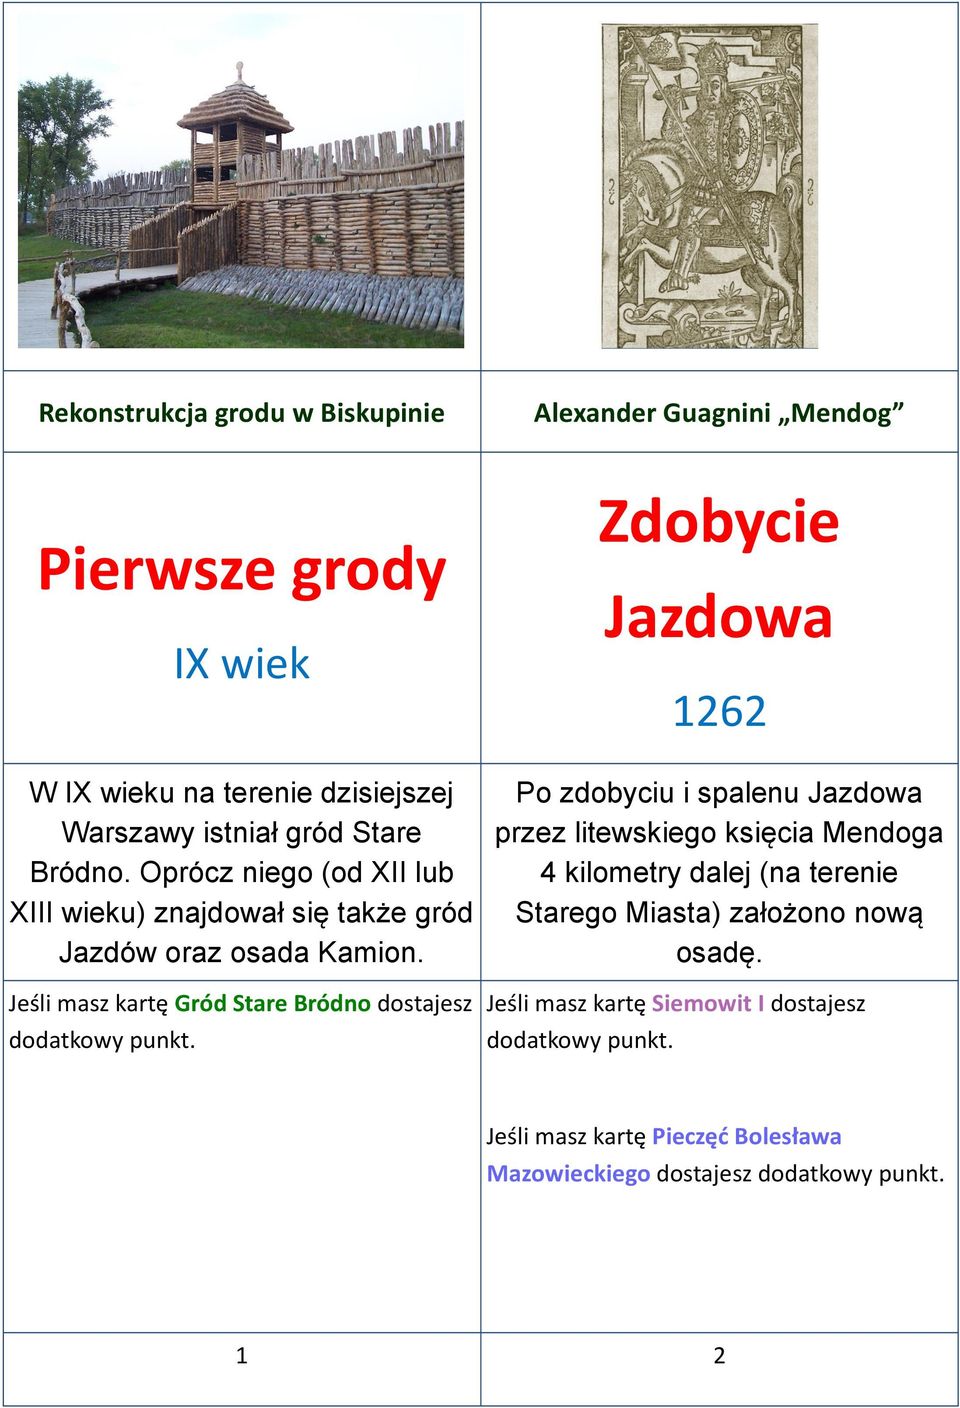 Jeśli masz kartę Gród Stare Bródno dostajesz Zdobycie Jazdowa 1262 Po zdobyciu i spalenu Jazdowa przez litewskiego księcia Mendoga 4